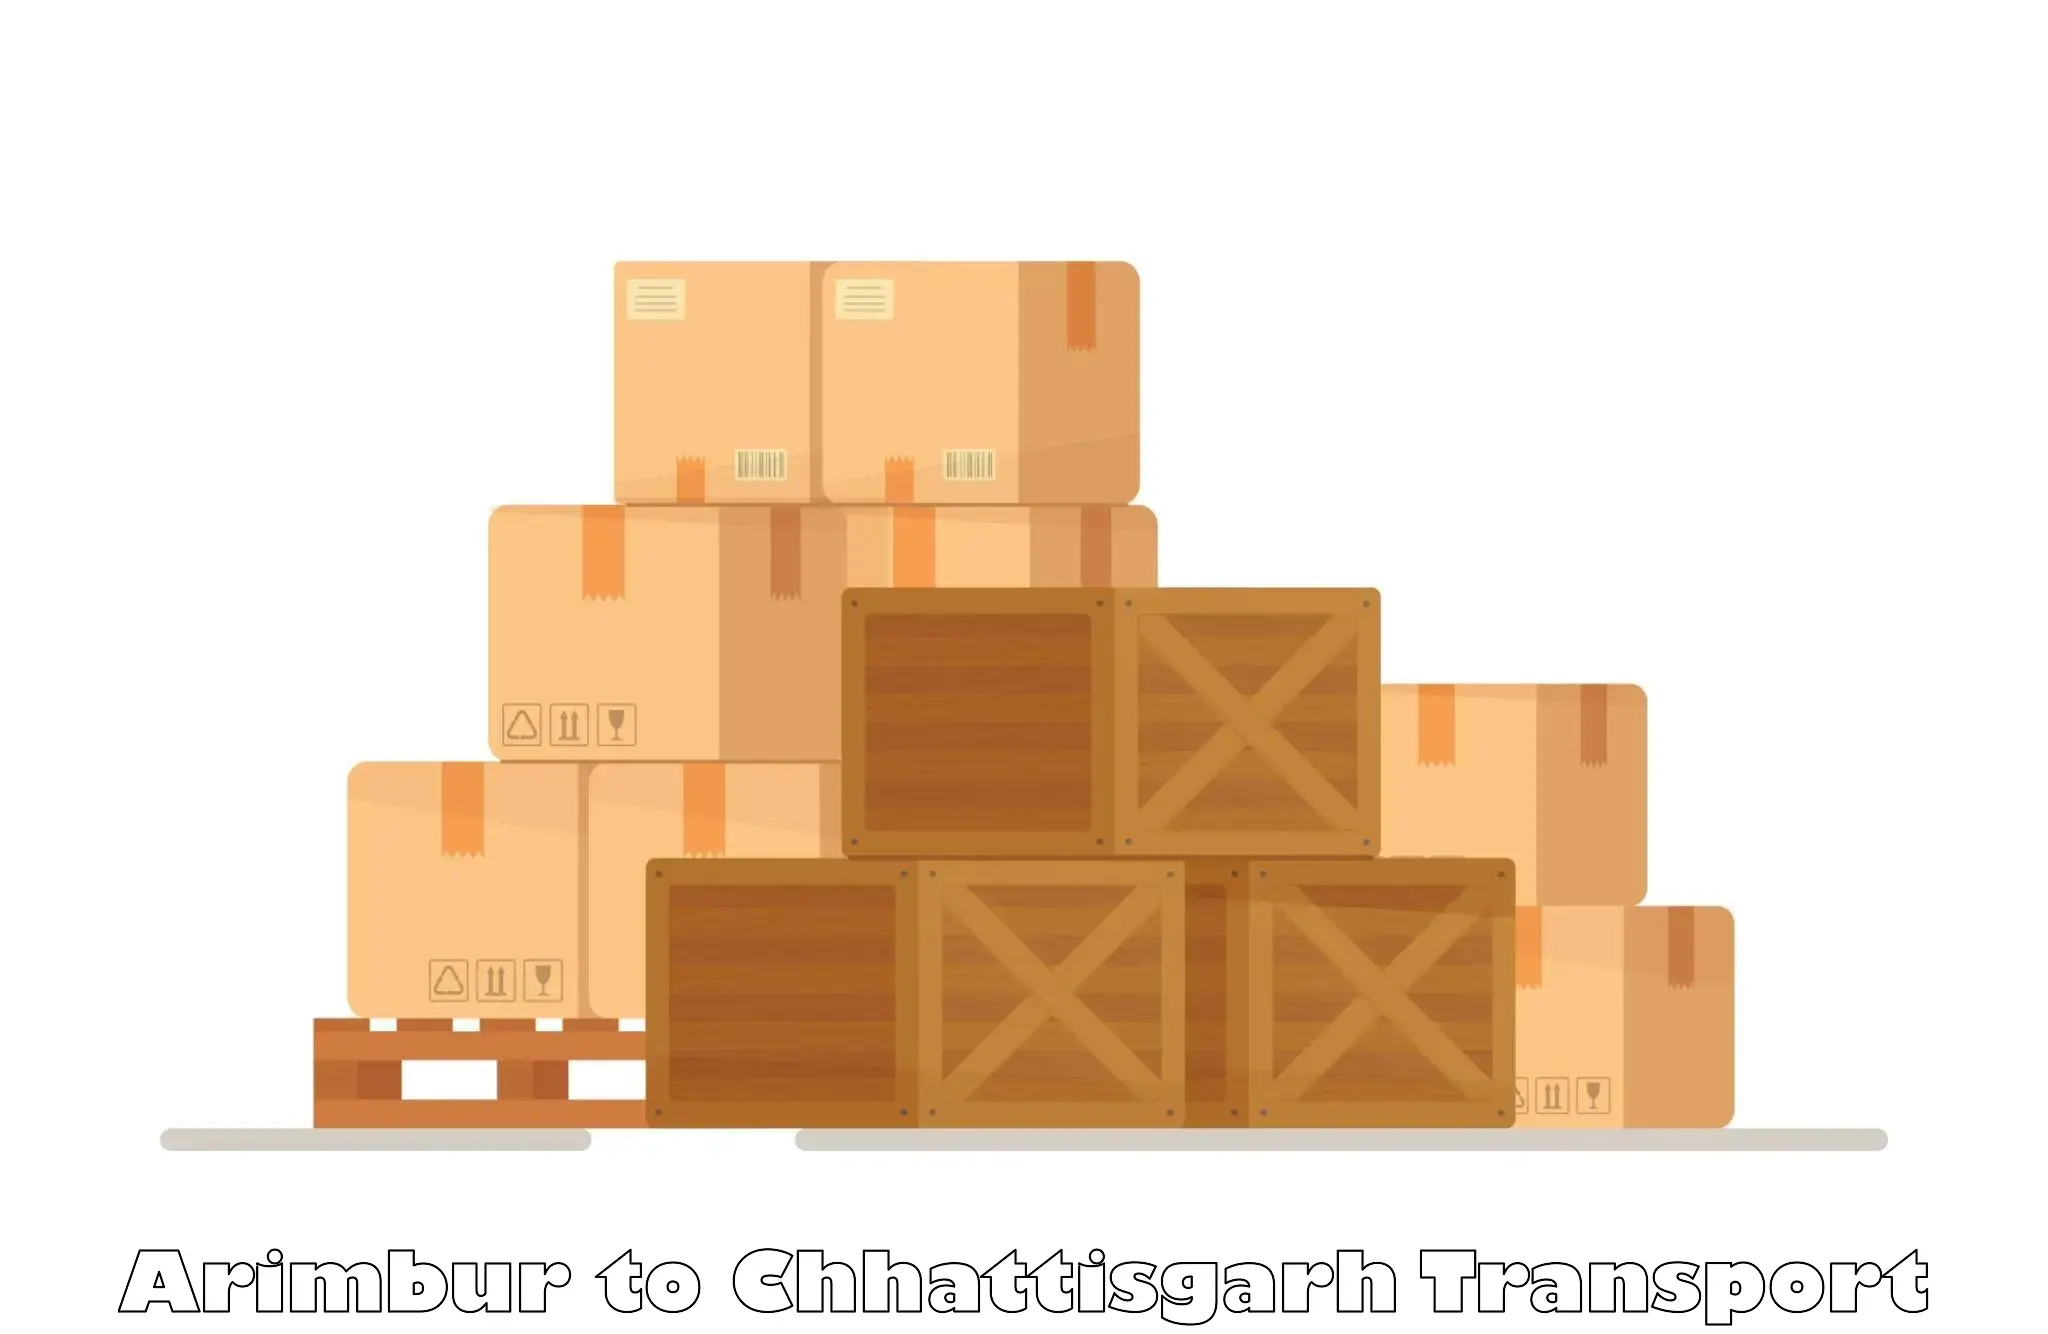 Goods transport services Arimbur to Bijapur Chhattisgarh